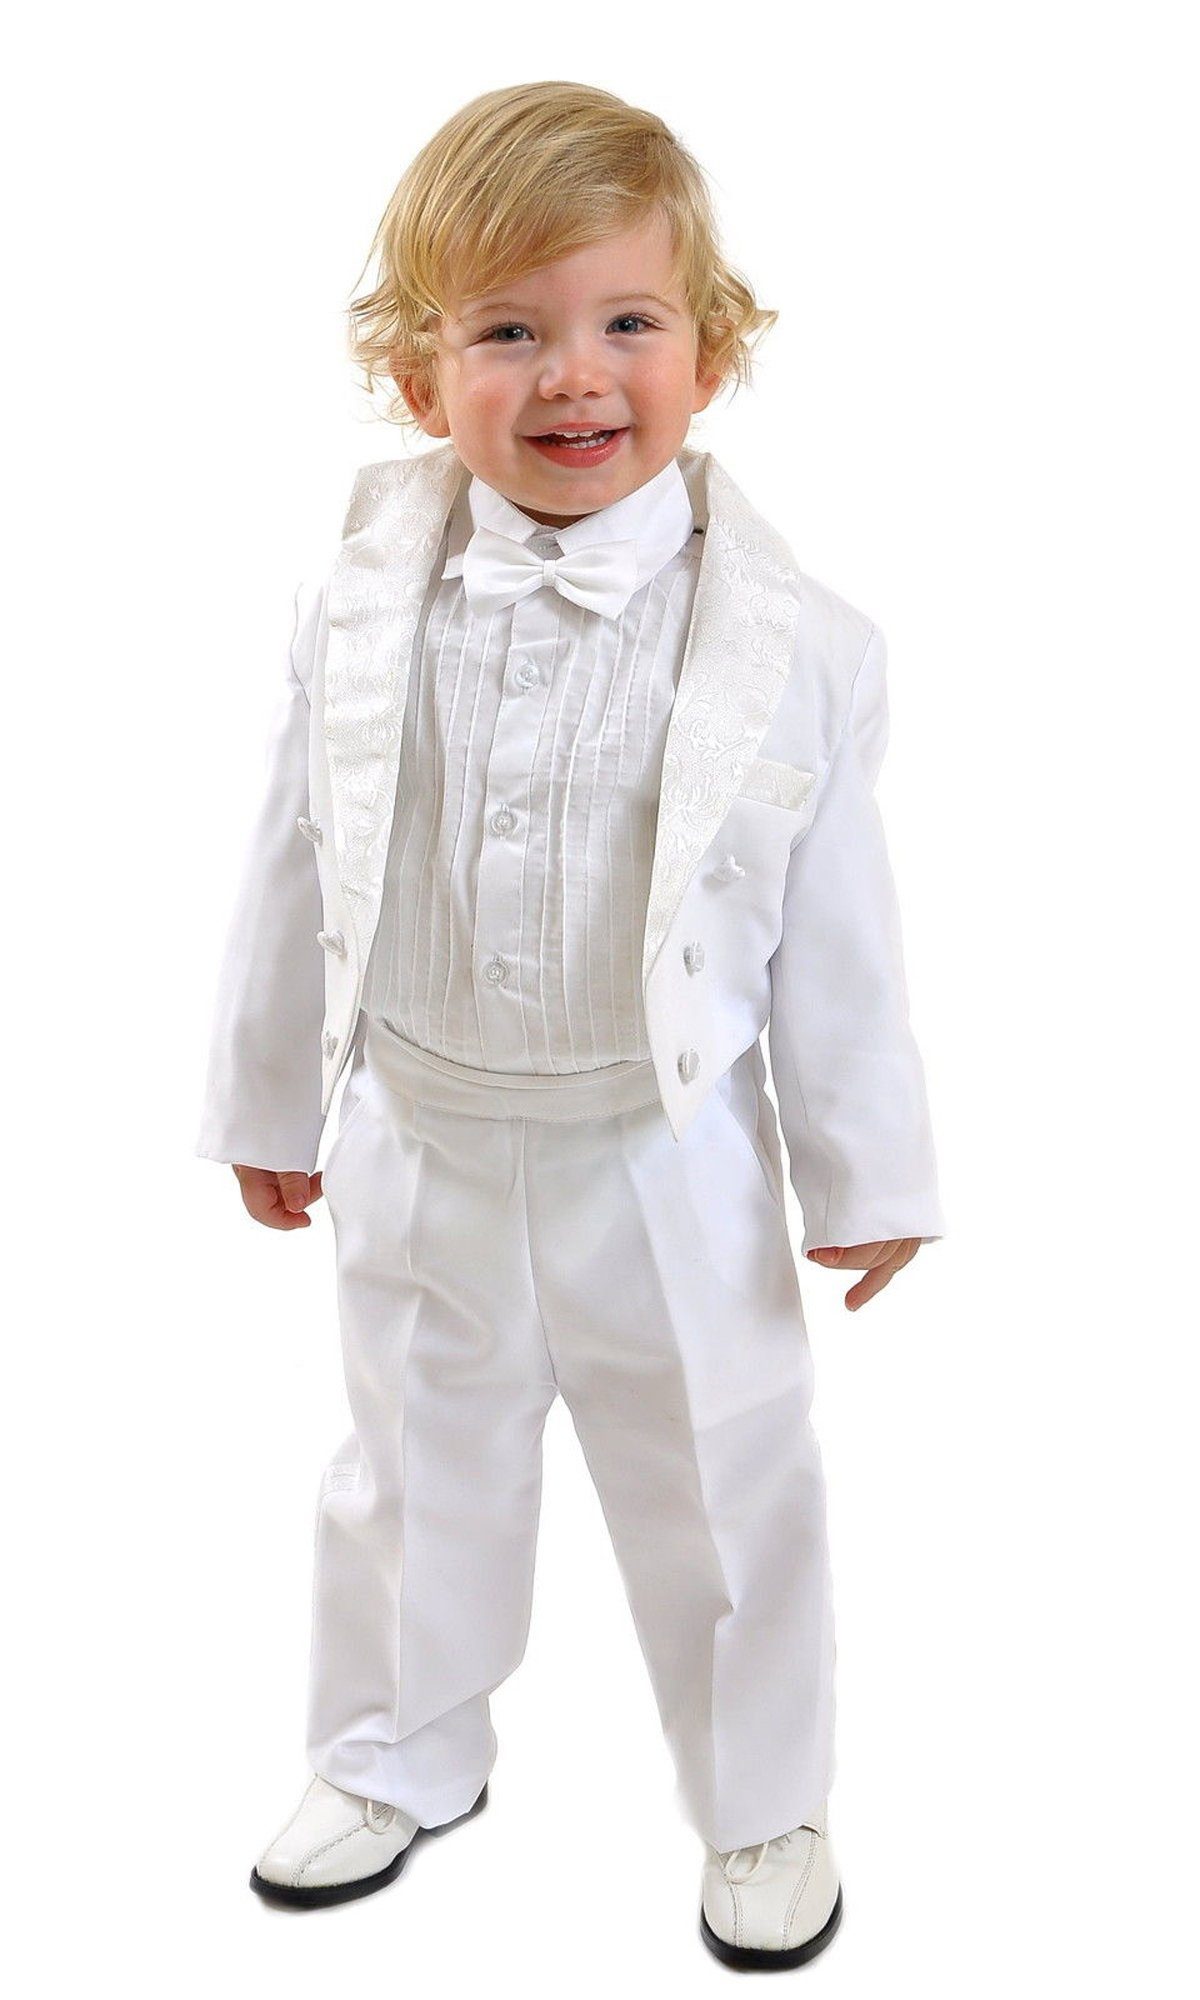 Family Trends Anzug im Look 5-teiligen Set im eleganten weiß